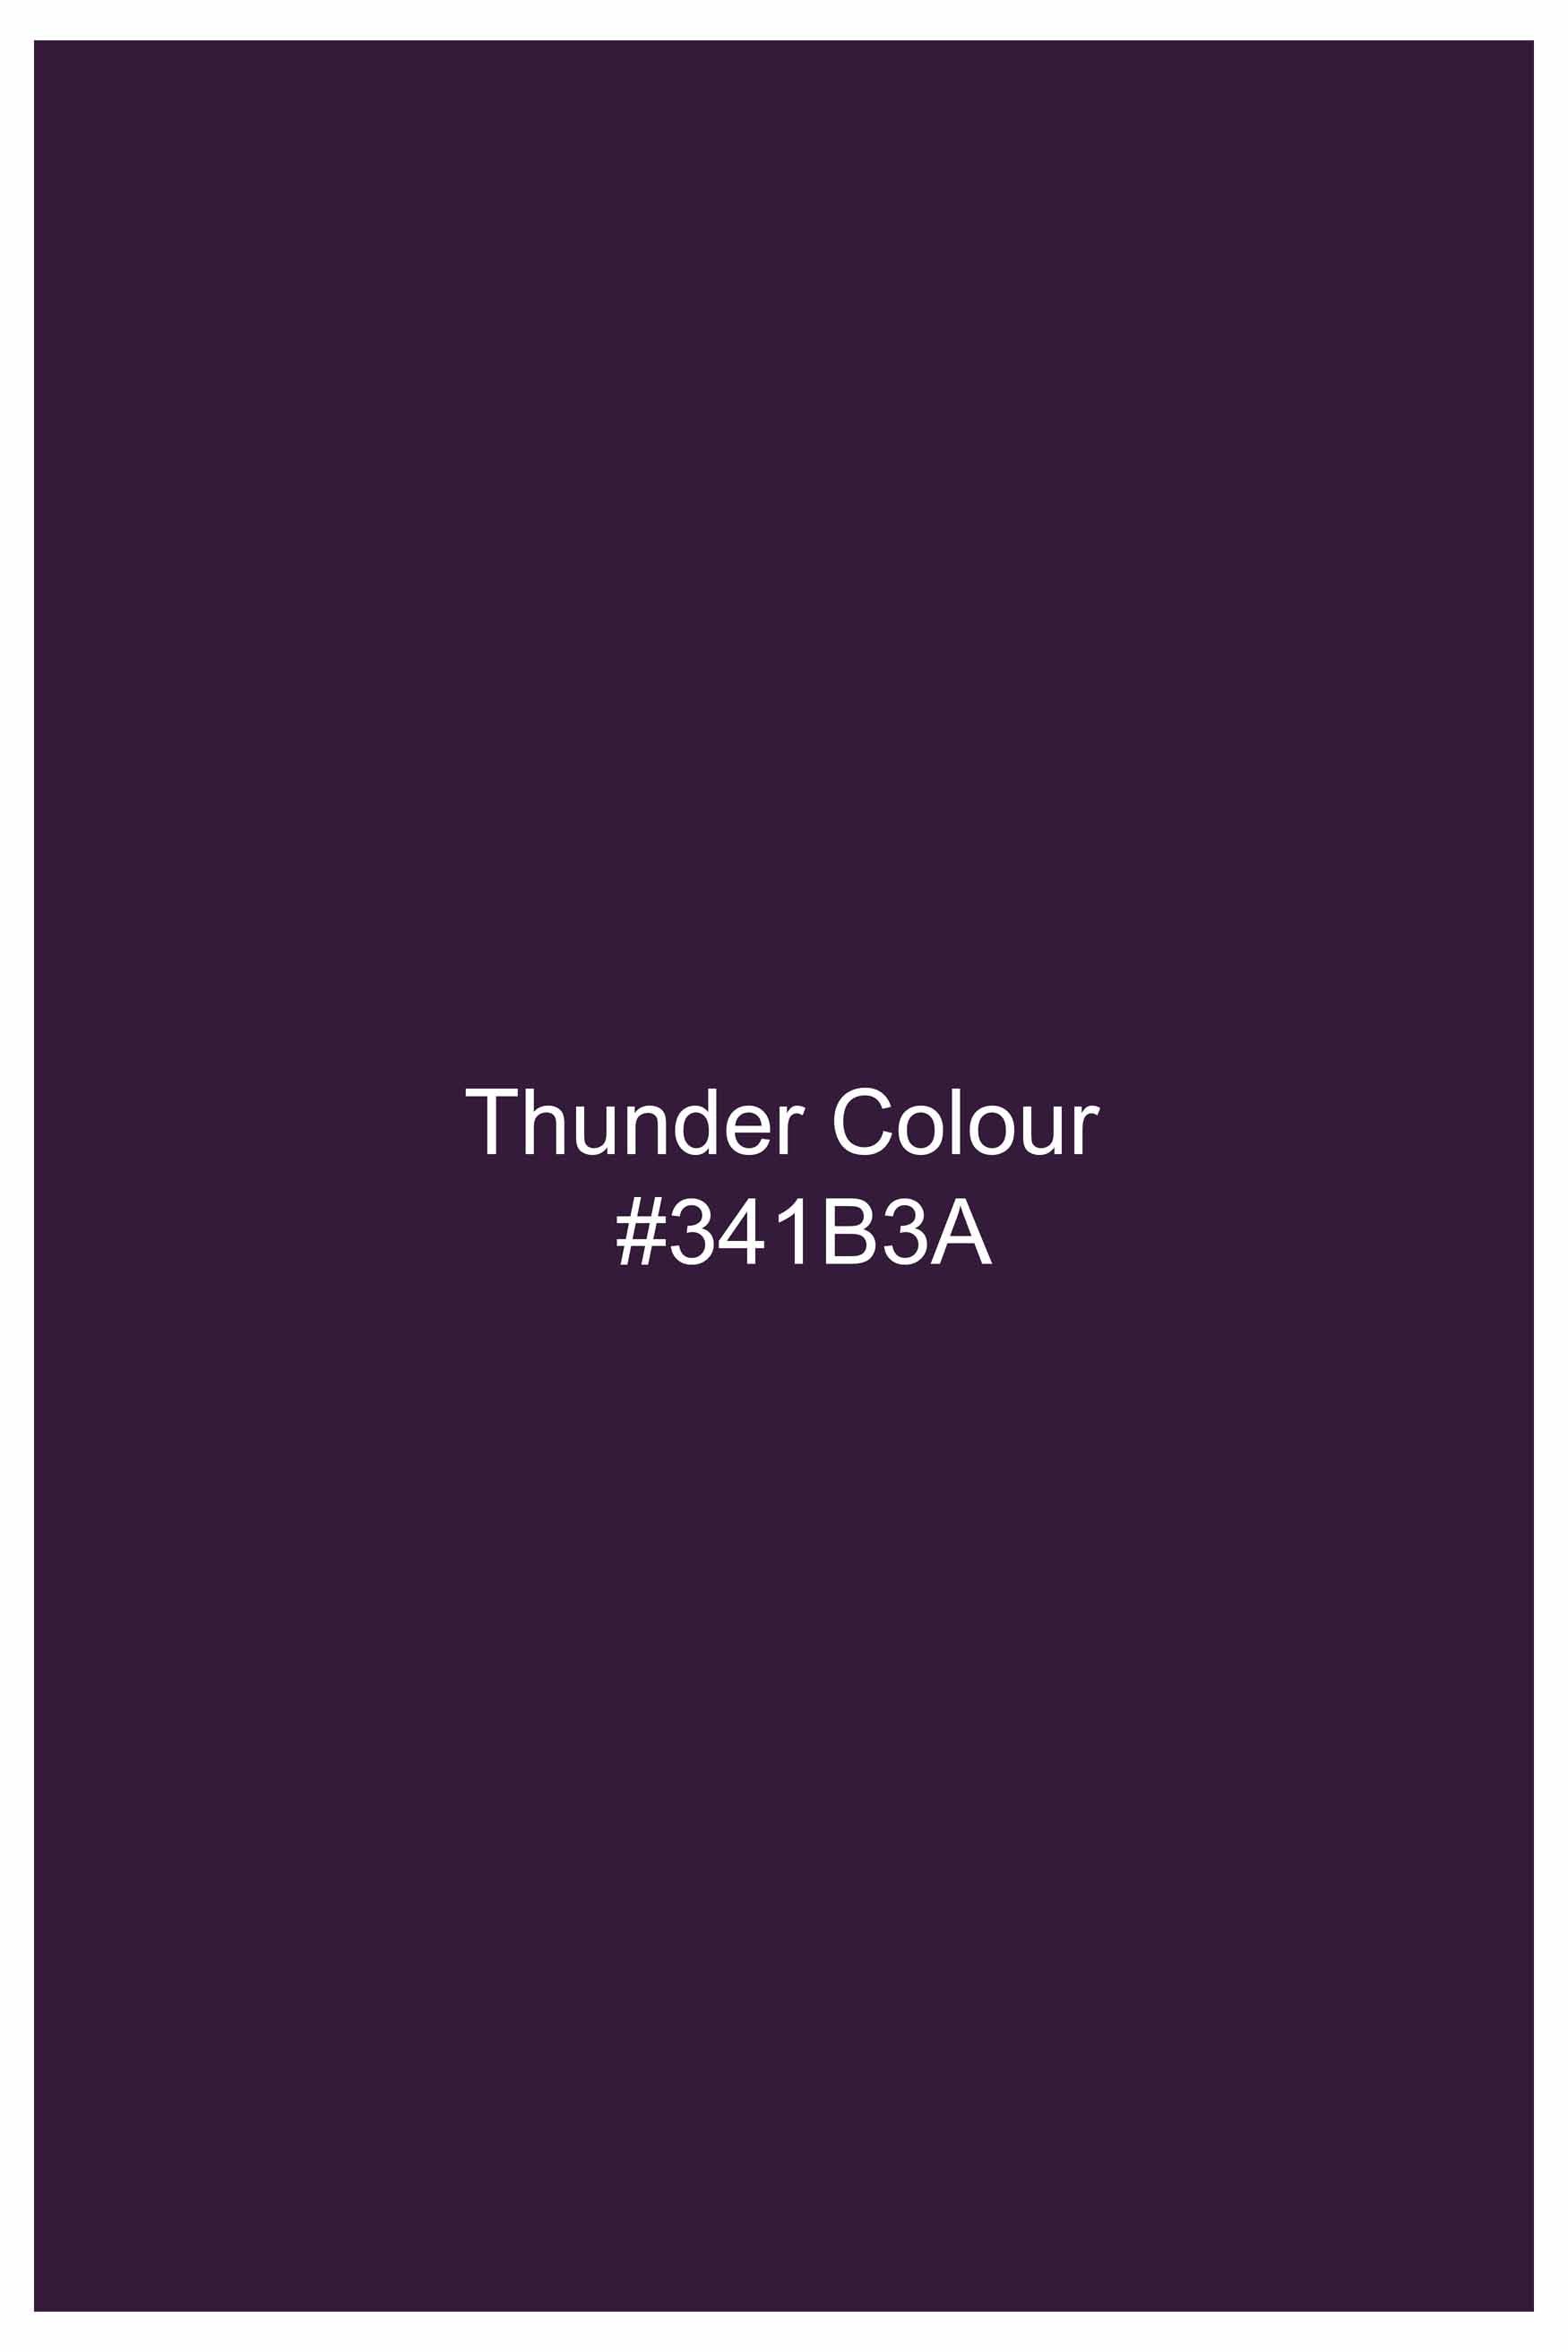 Thunder Purple Subtle Sheen Super Soft Premium Cotton Shirt  11001-BLK-38, 11001-BLK-H-38, 11001-BLK-39, 11001-BLK-H-39, 11001-BLK-40, 11001-BLK-H-40, 11001-BLK-42, 11001-BLK-H-42, 11001-BLK-44, 11001-BLK-H-44, 11001-BLK-46, 11001-BLK-H-46, 11001-BLK-48, 11001-BLK-H-48, 11001-BLK-50, 11001-BLK-H-50, 11001-BLK-52, 11001-BLK-H-52